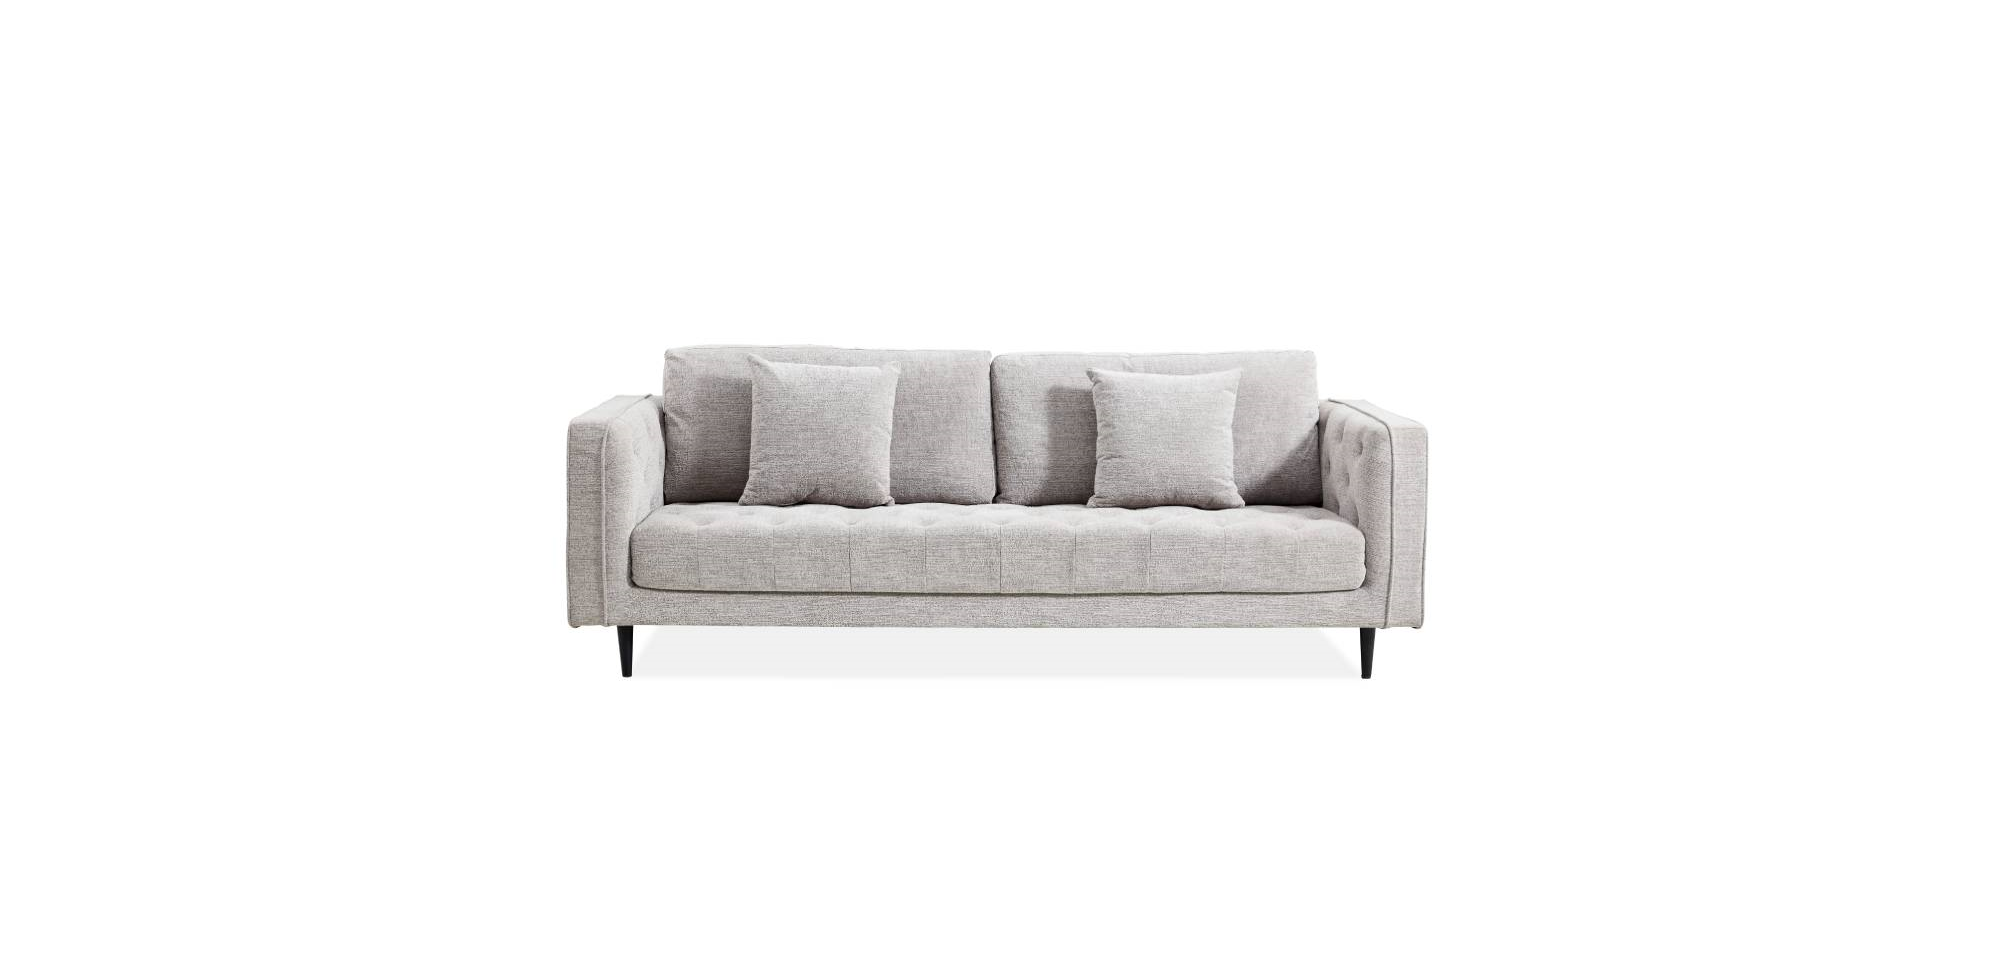 Adaire XL 3 Seater Sofa - Quartz